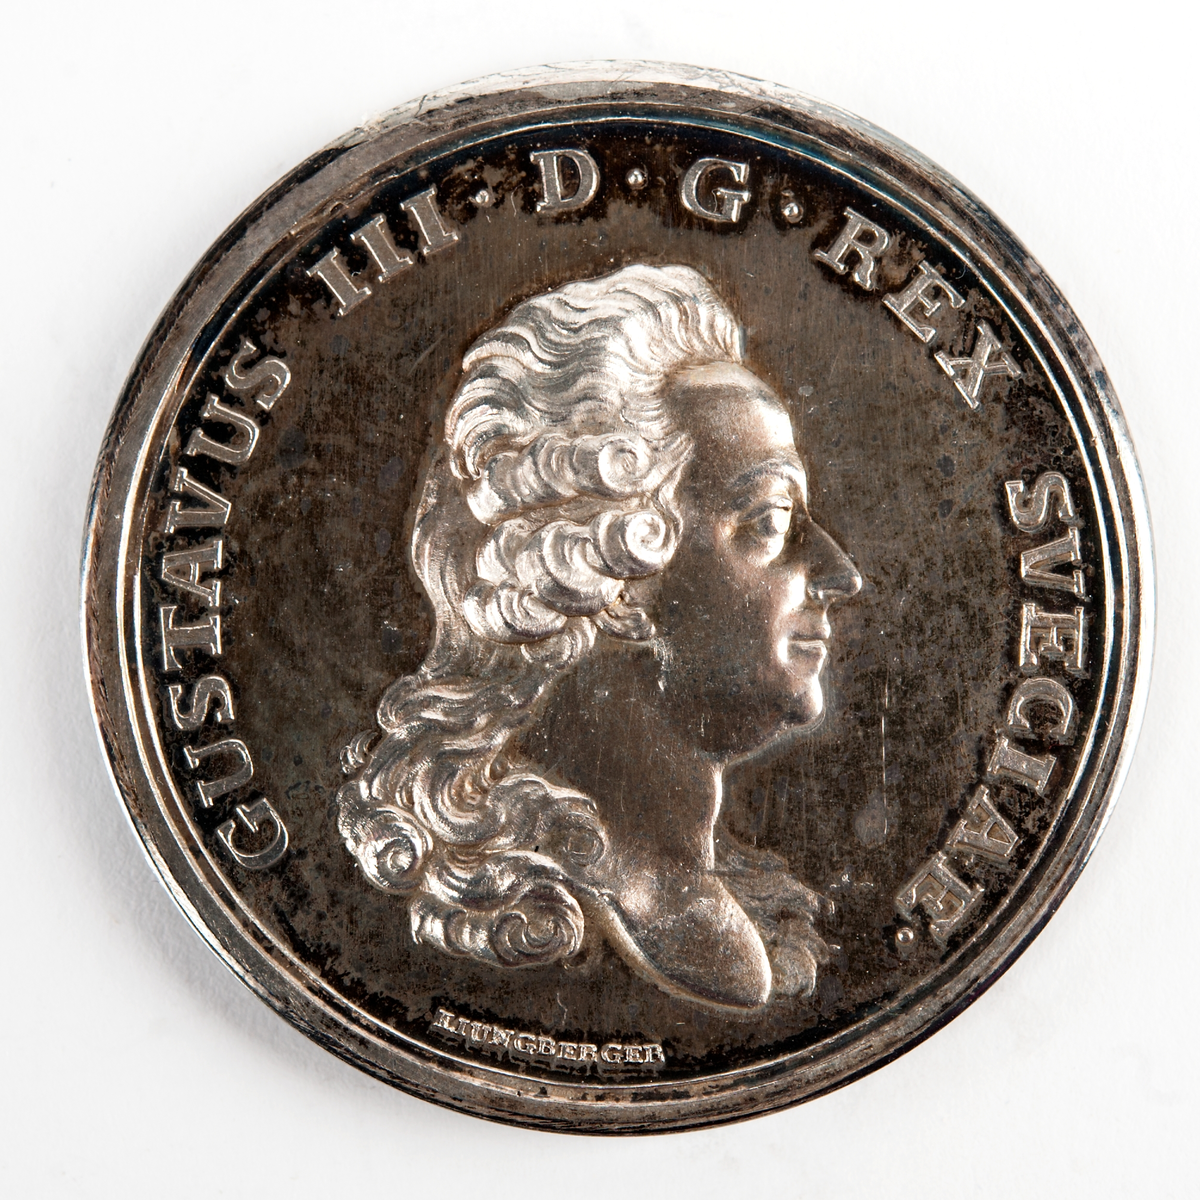 Åtsida: Porträtt av Gustav III.
Frånsida: Hav med isberg, valar och ett skepp med svensk örlogsflagg.